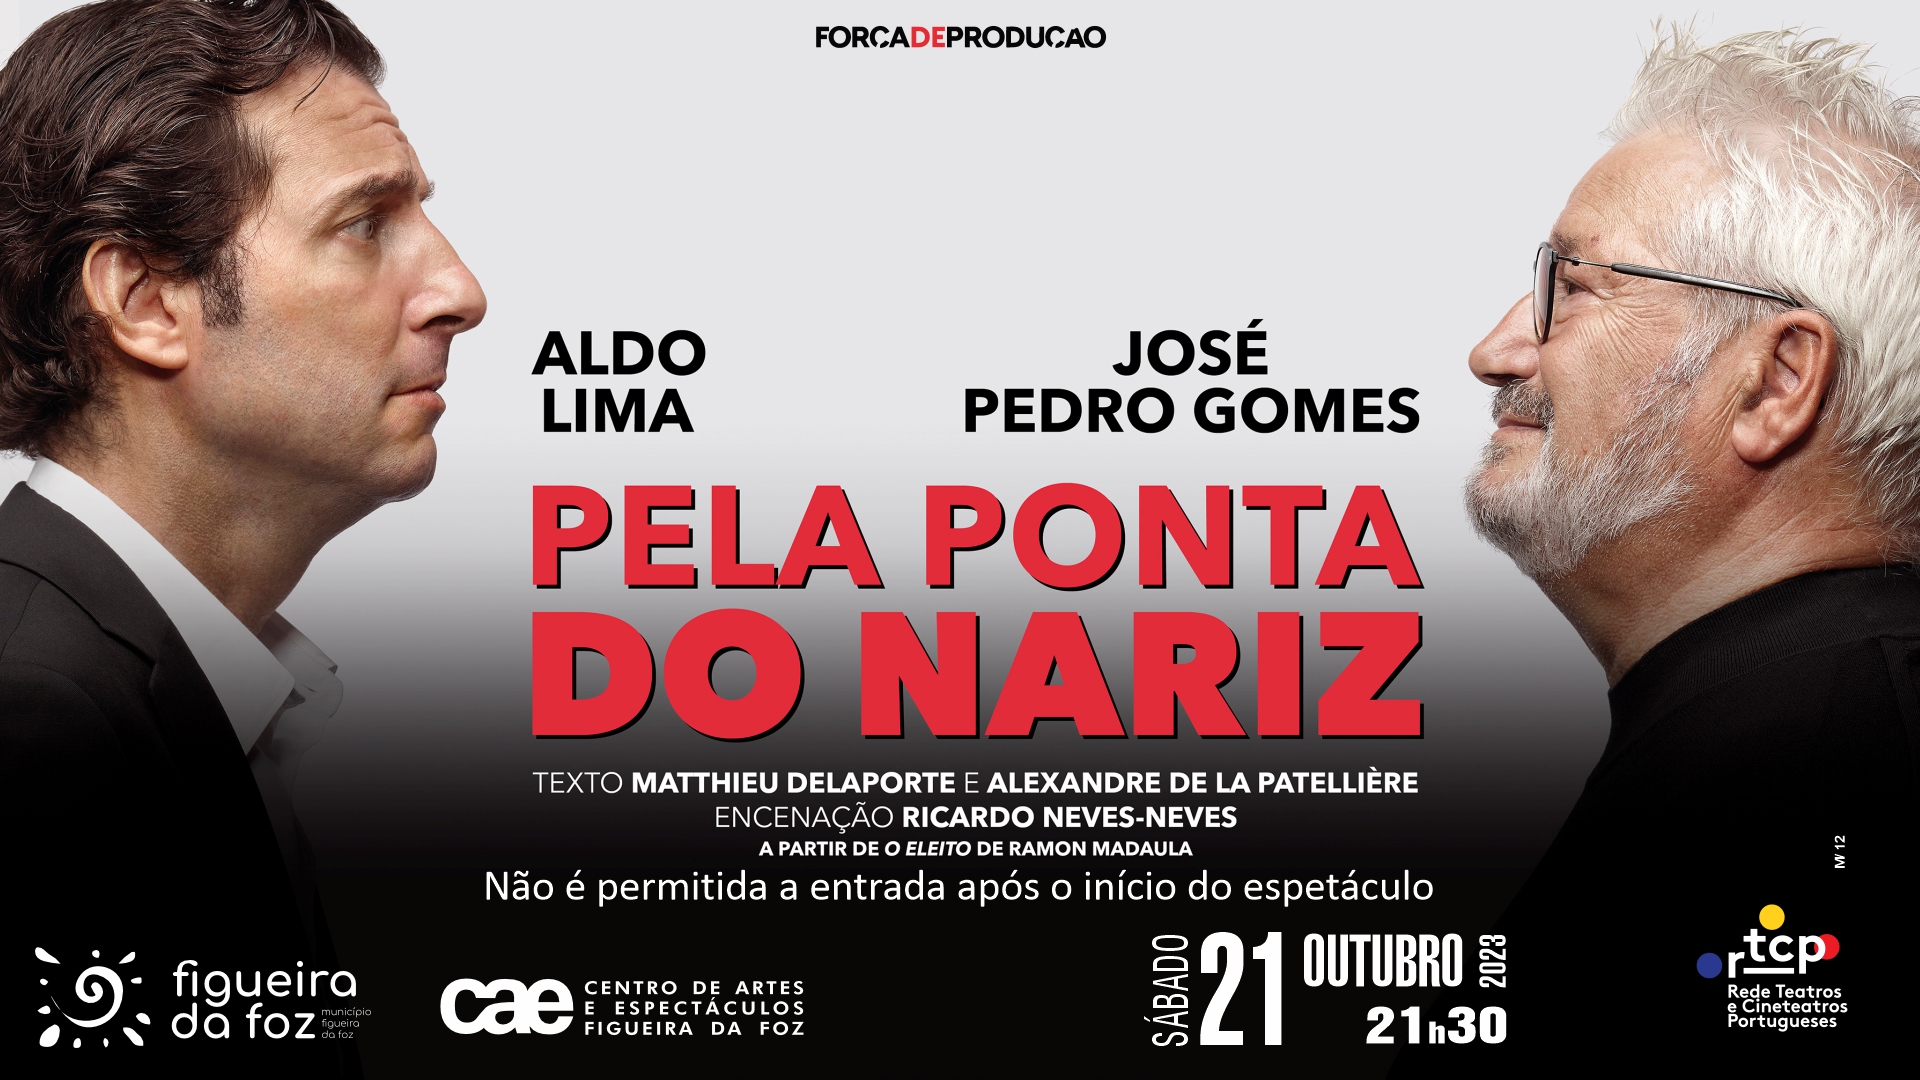 'Pela Ponta do Nariz', com Aldo Lima e José Pedro Gomes